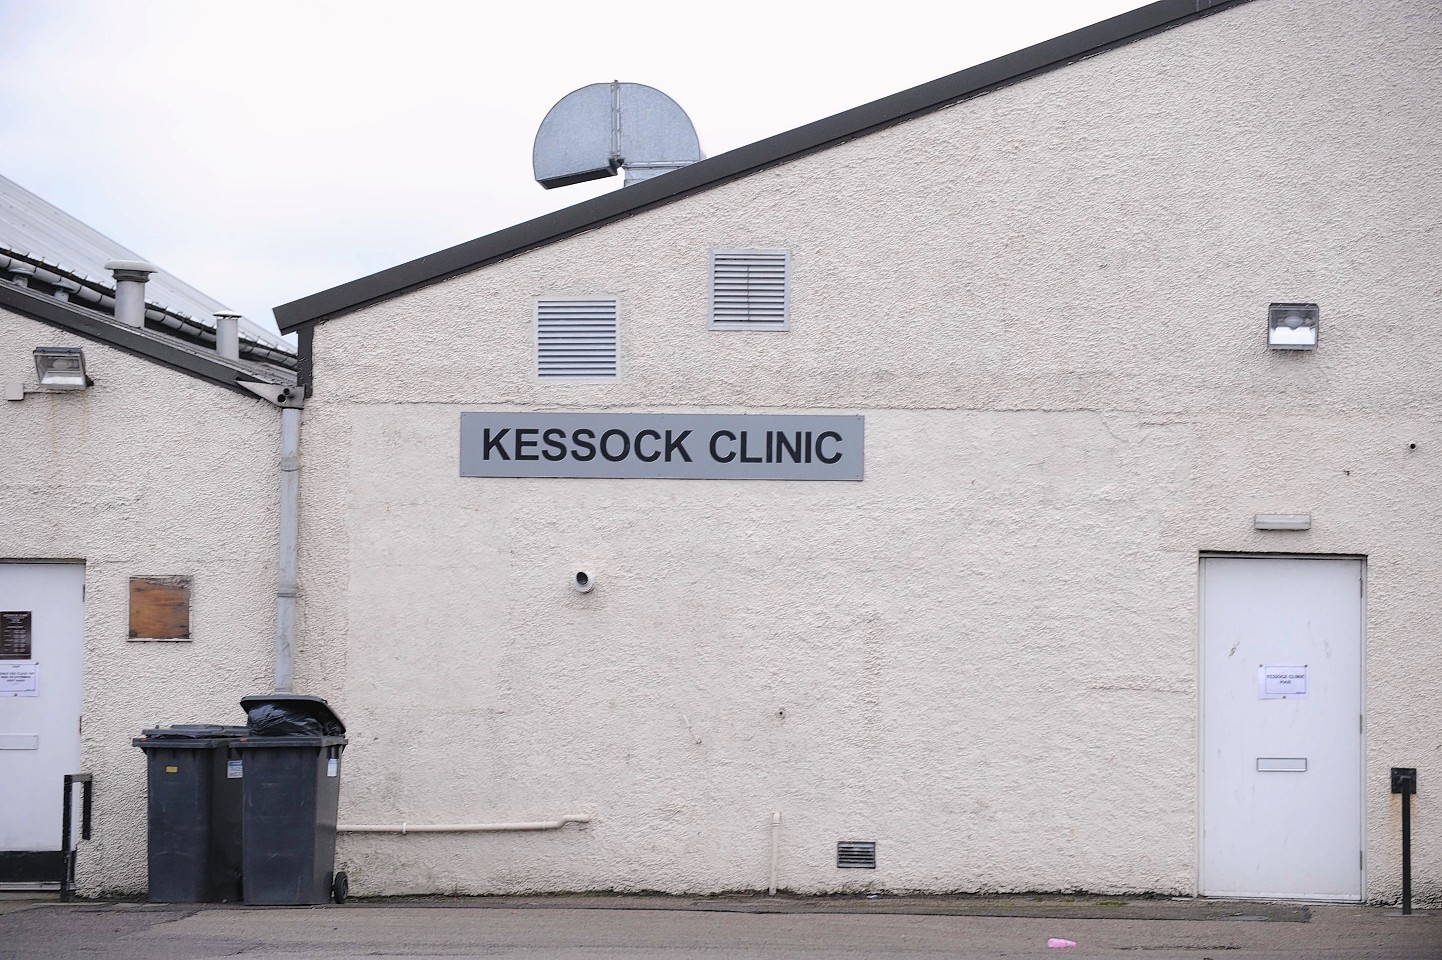 Kessock Clinic